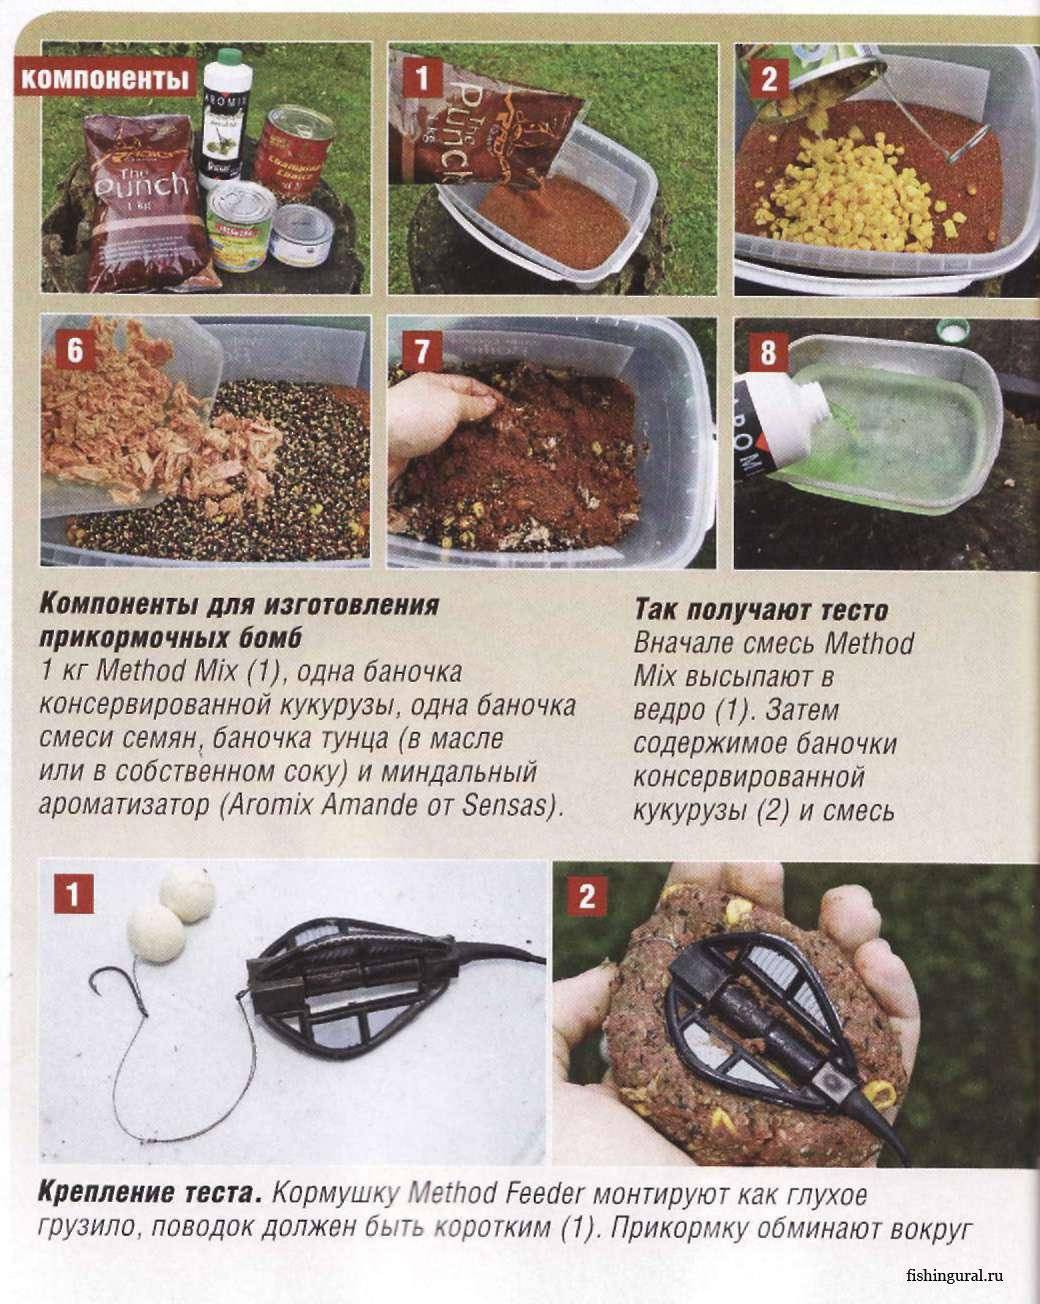 Рецепты домашней прикормки для карпа своими руками для кормушки